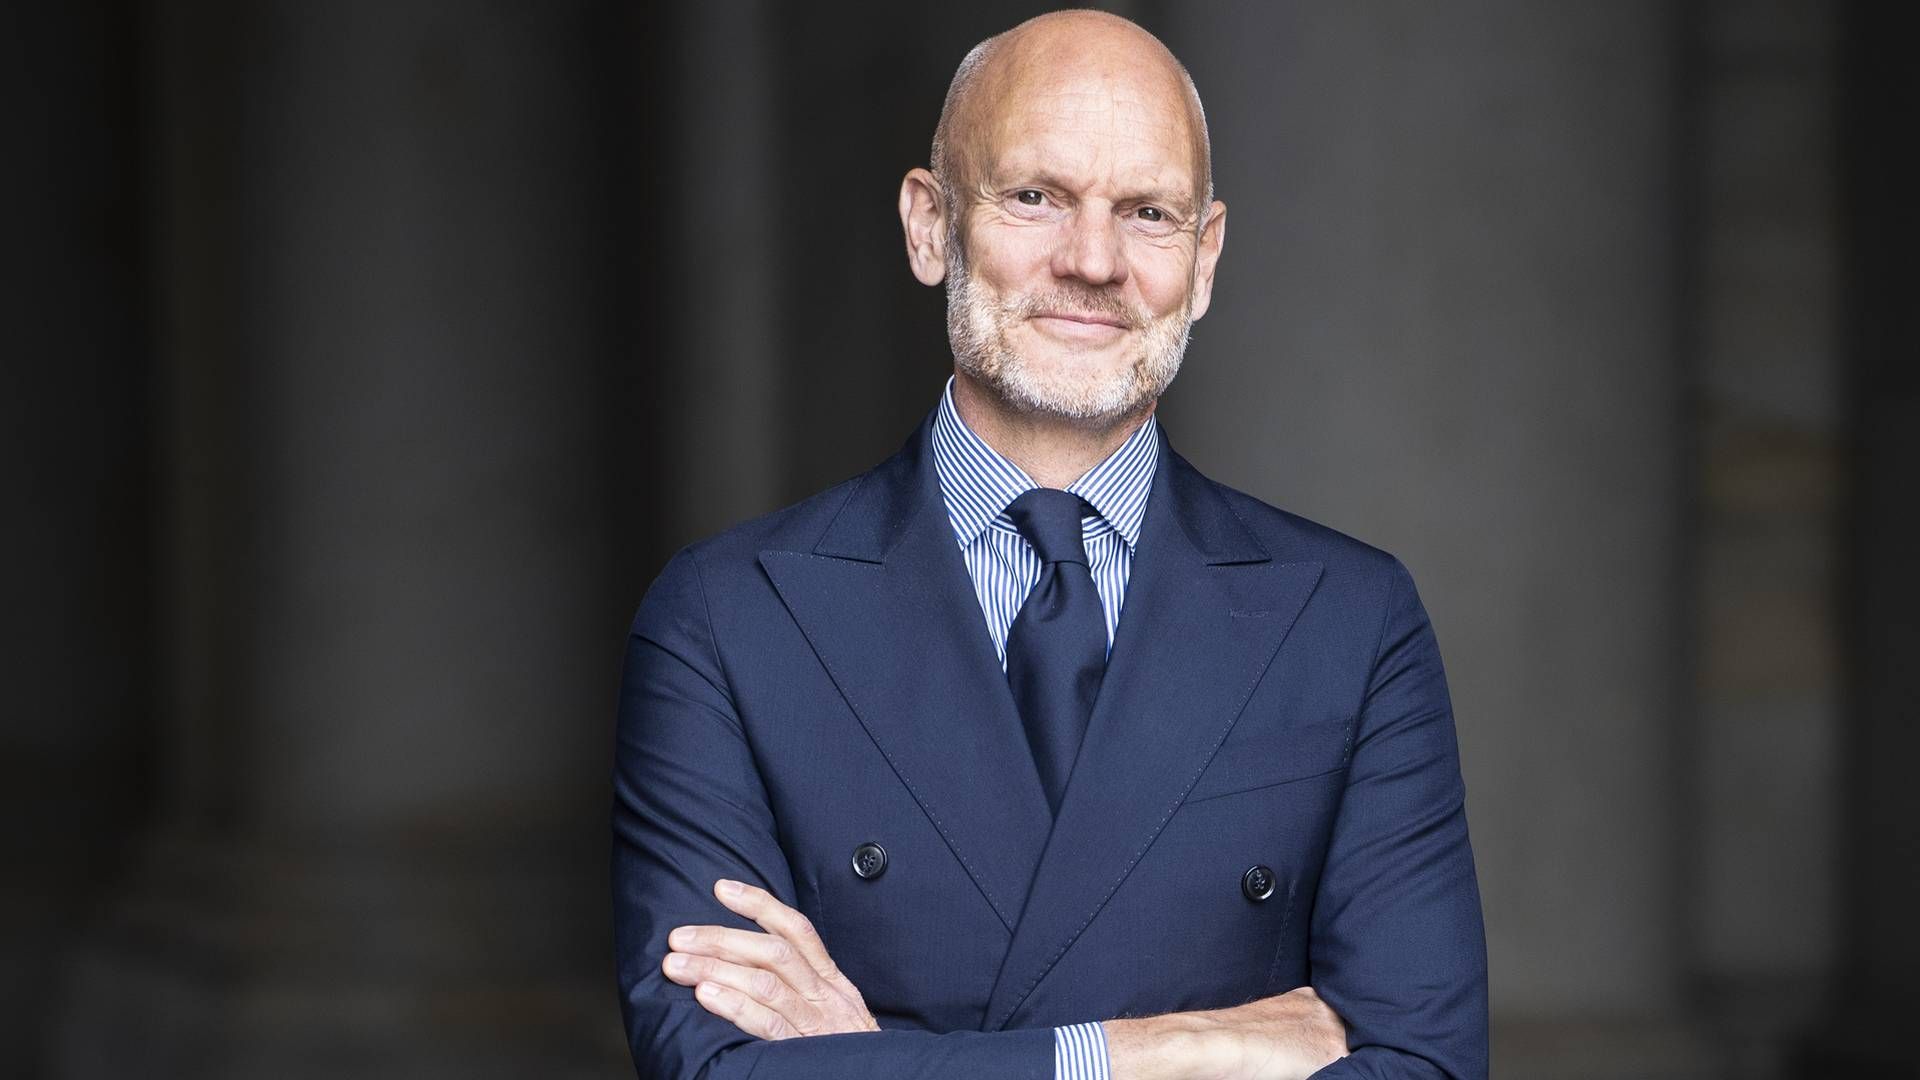 Nikolai Klausen er direktør i Dansk Detail og Wear, som er paraplyorganisationer under Dansk Erhverv. | Foto: Dansk Erhverv/PR